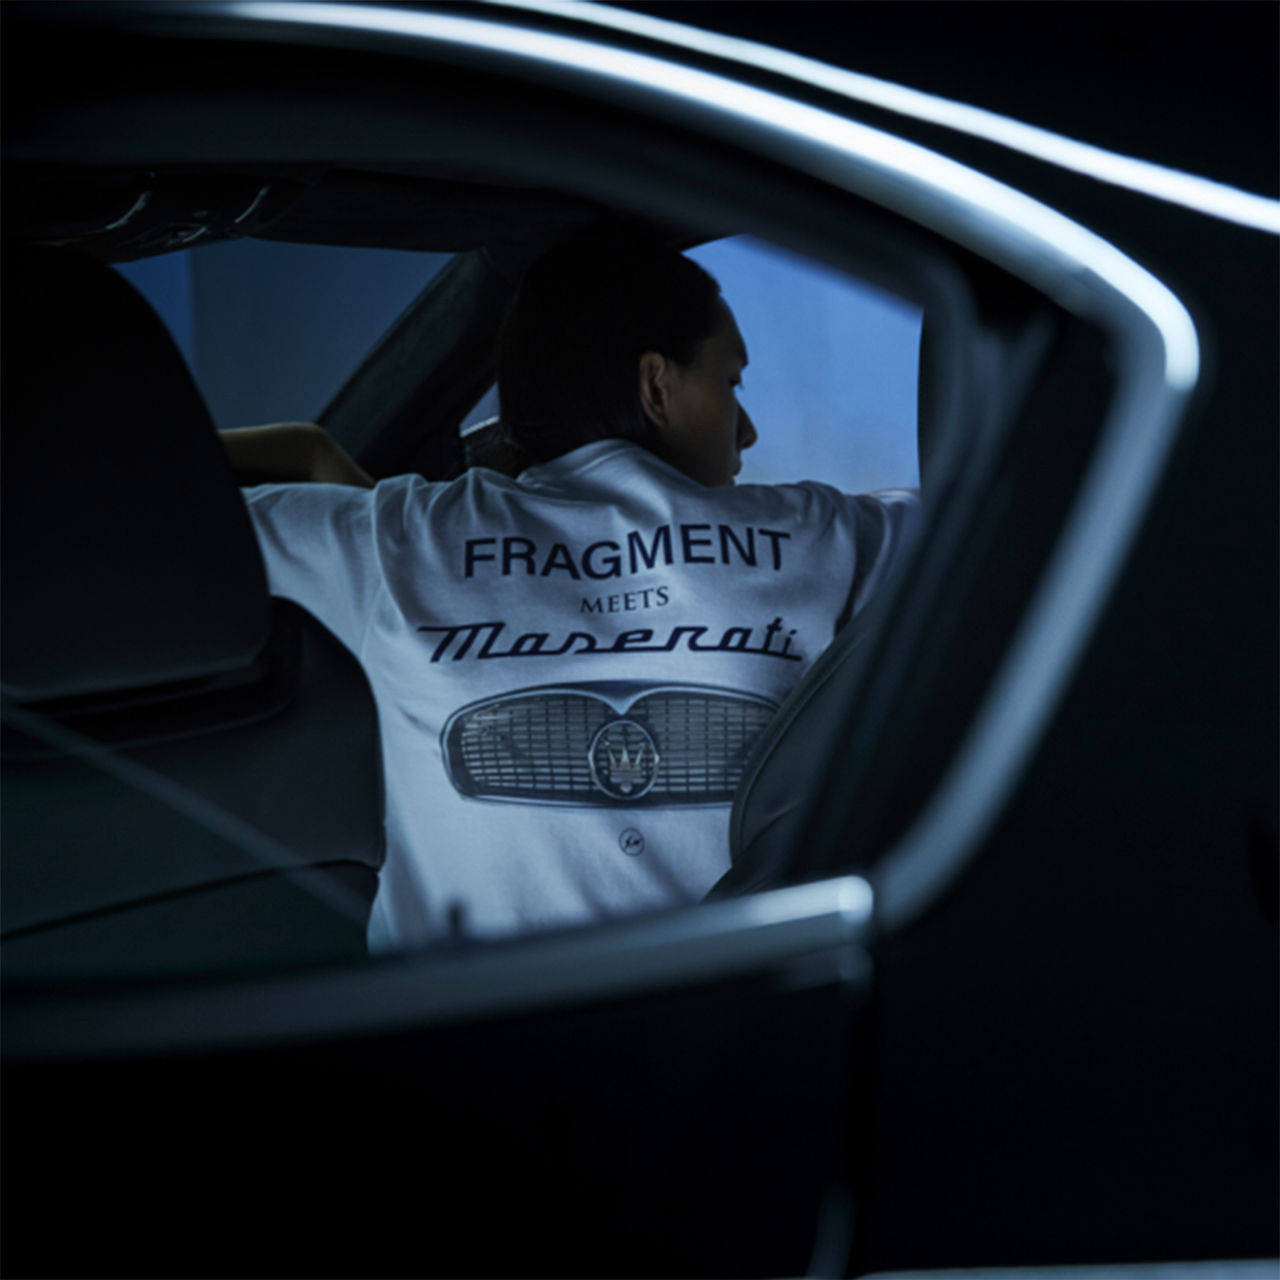 "Fragment Meets Maserati" written on a t-shirt of a man sitting inside a Maserati vehicle